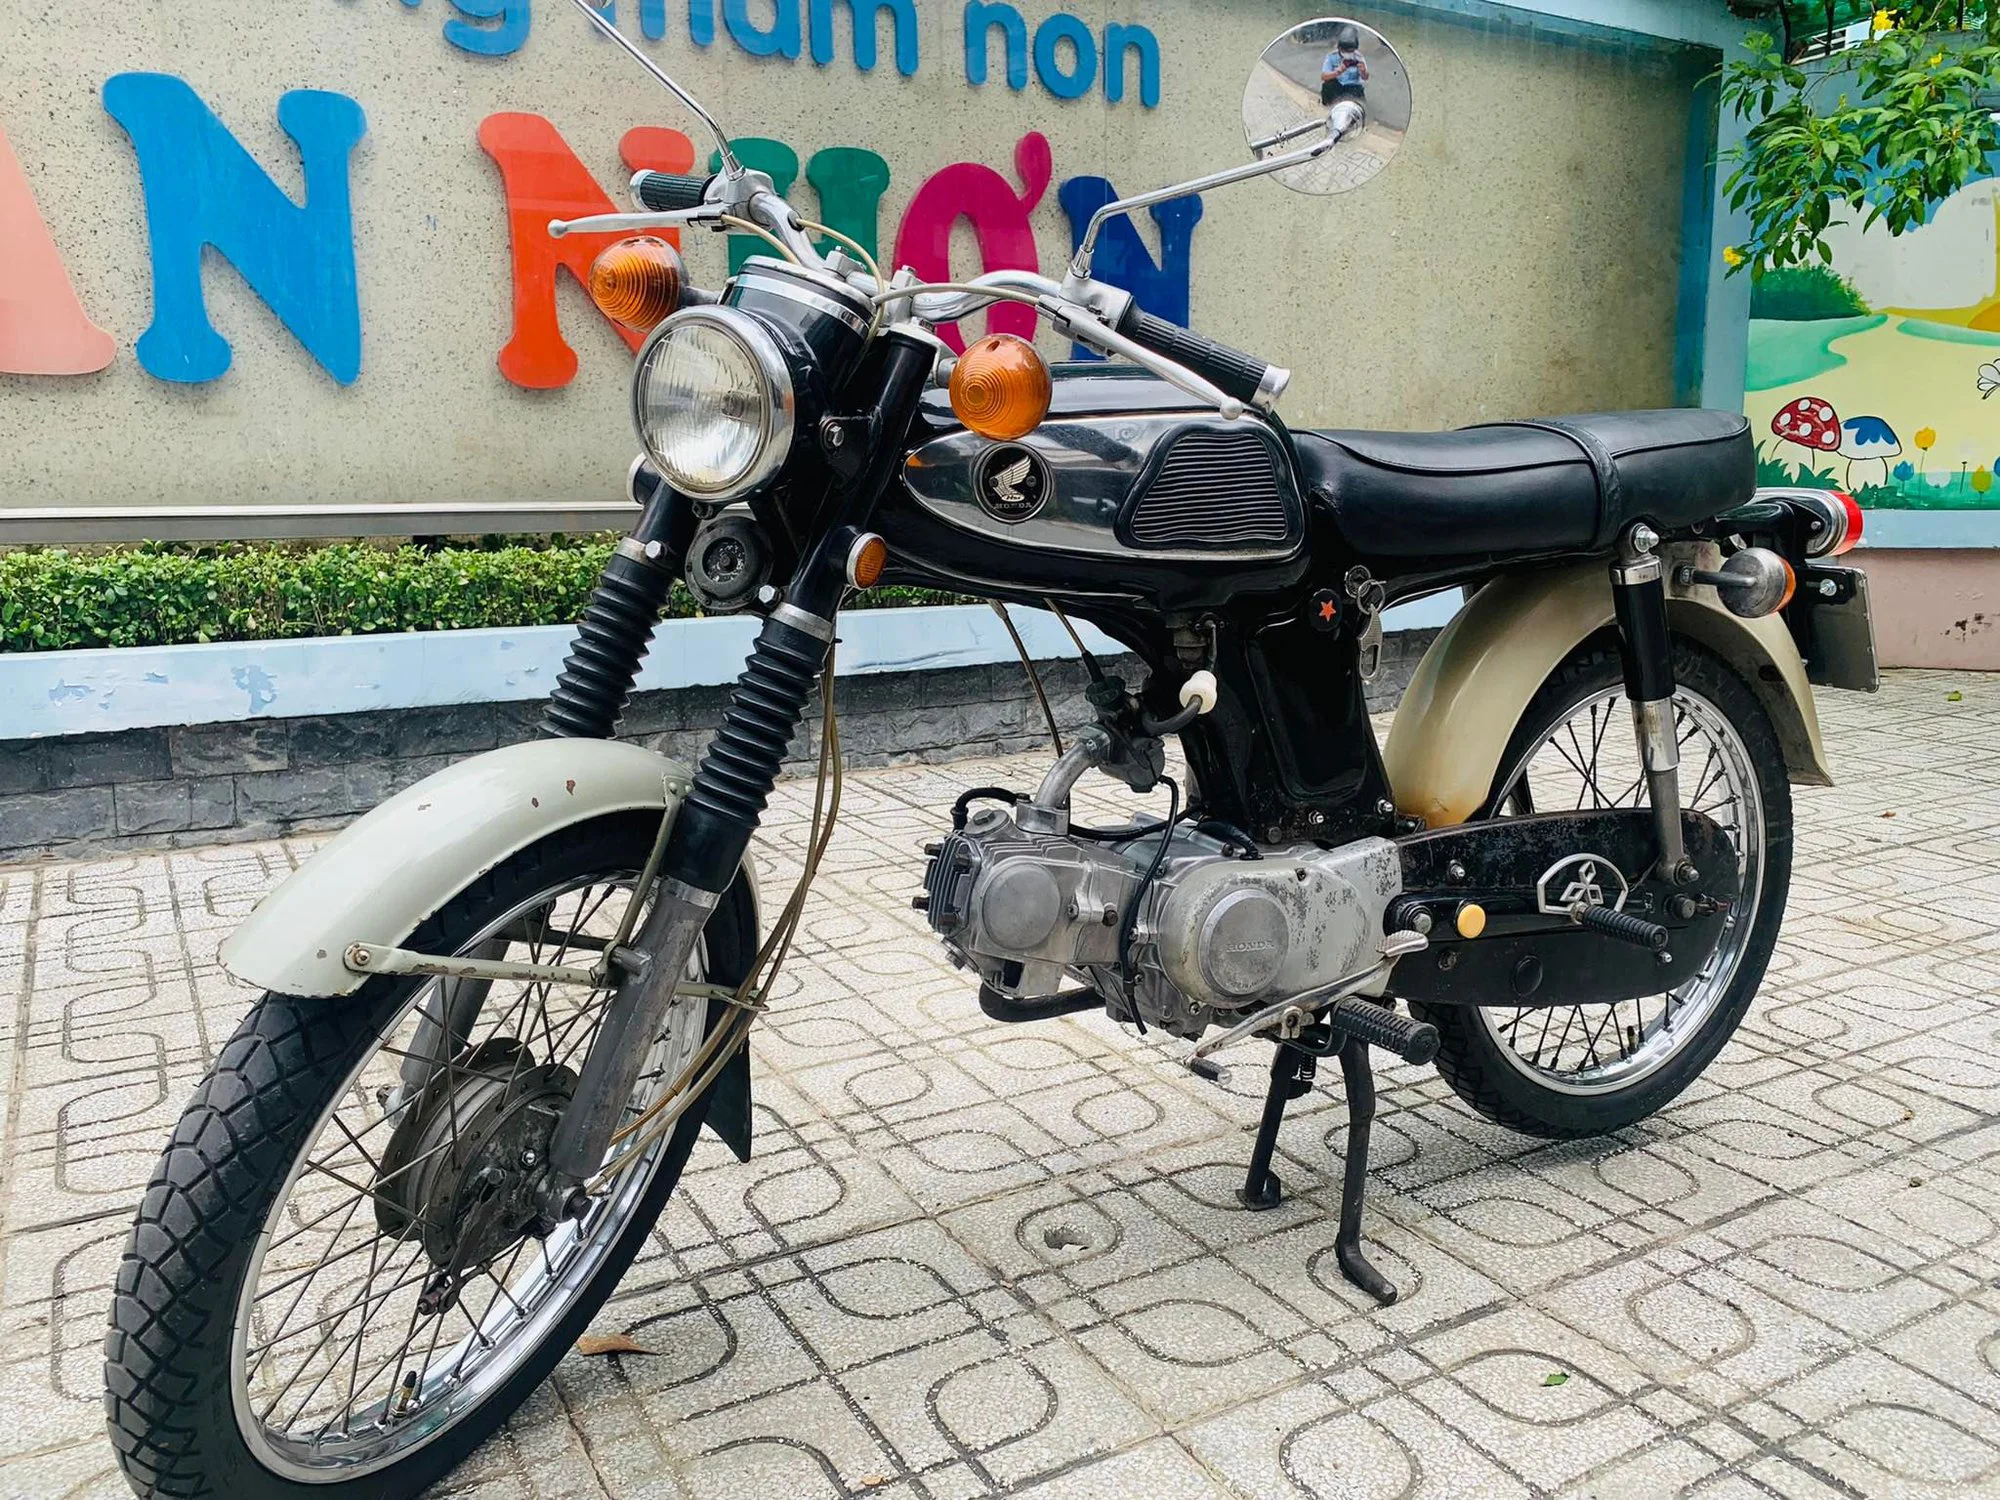 Ngắm Cặp Honda 67 Biển Tứ Quý Giá Gần 800 Triệu Đồng